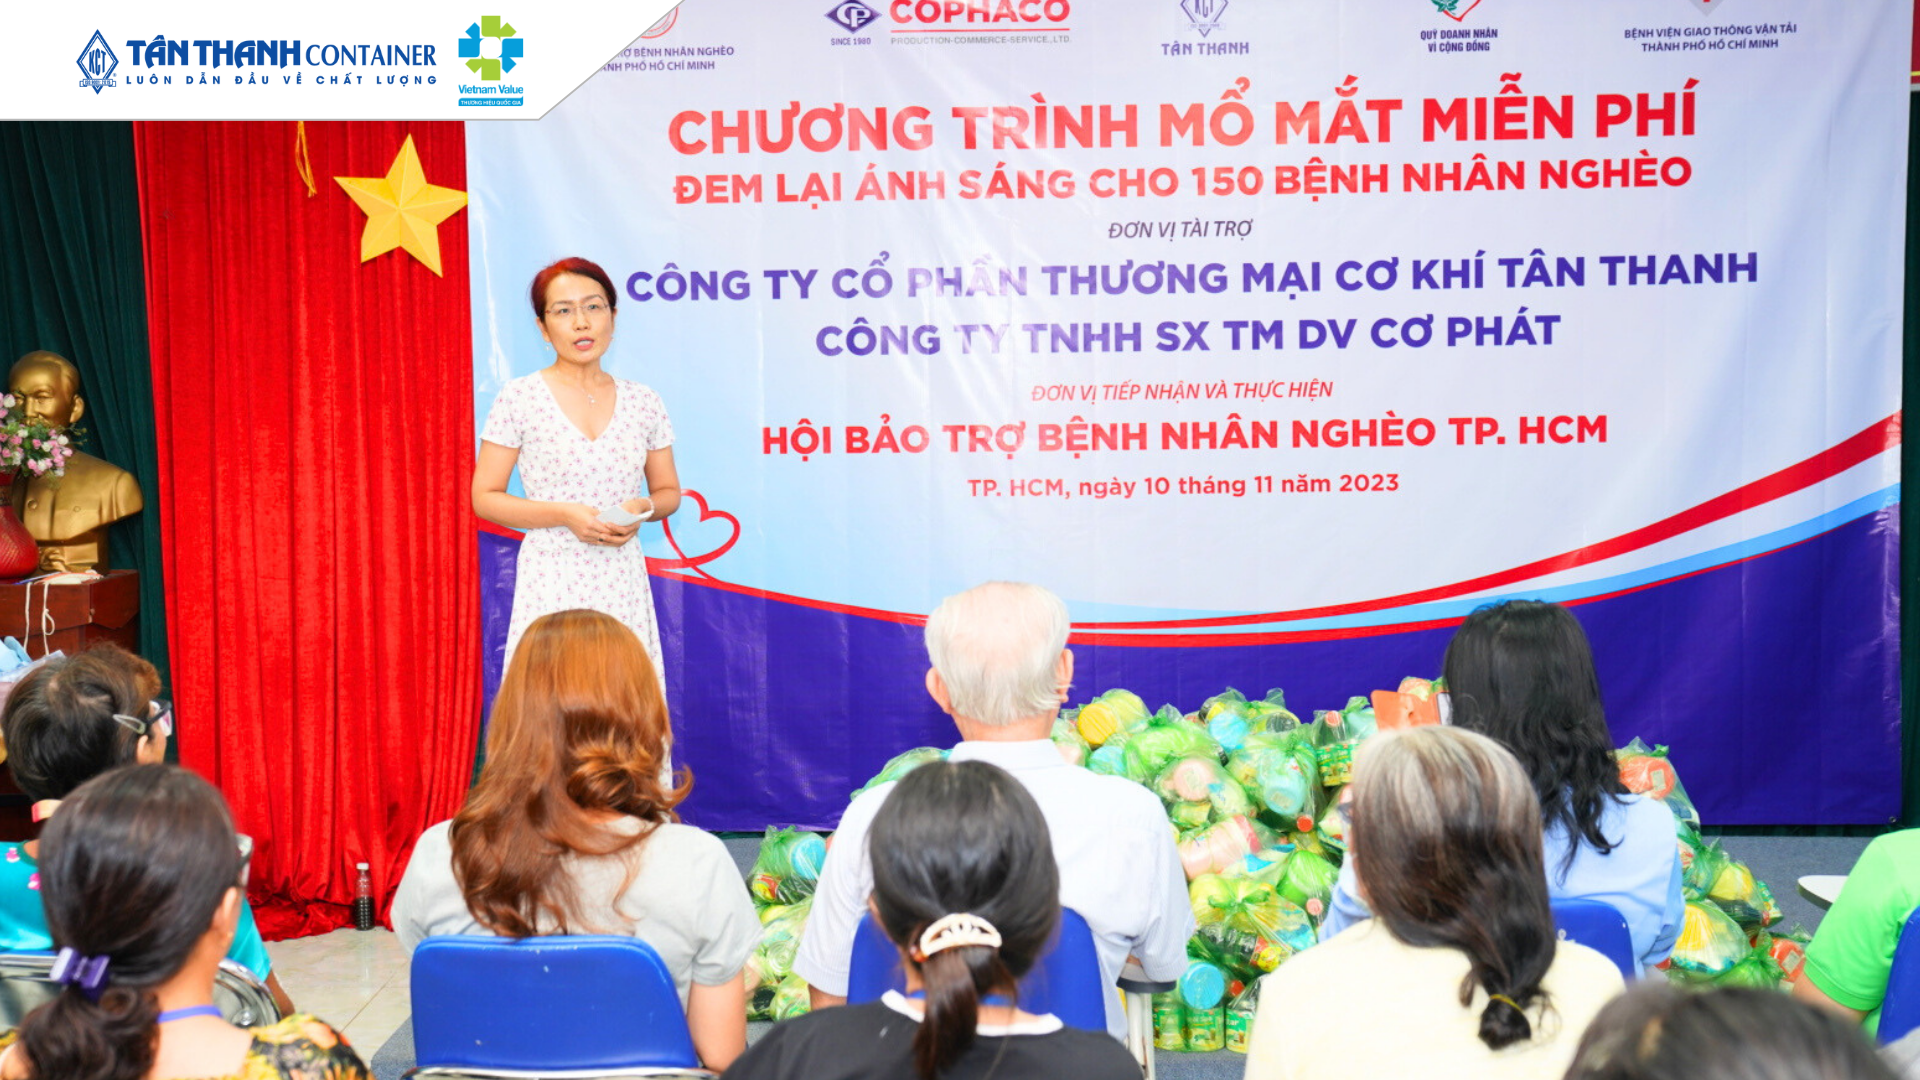 Tân Thanh Container tài trợ miễn phí phẫu thuật mắt cho 150 bệnh nhân nghèo -01